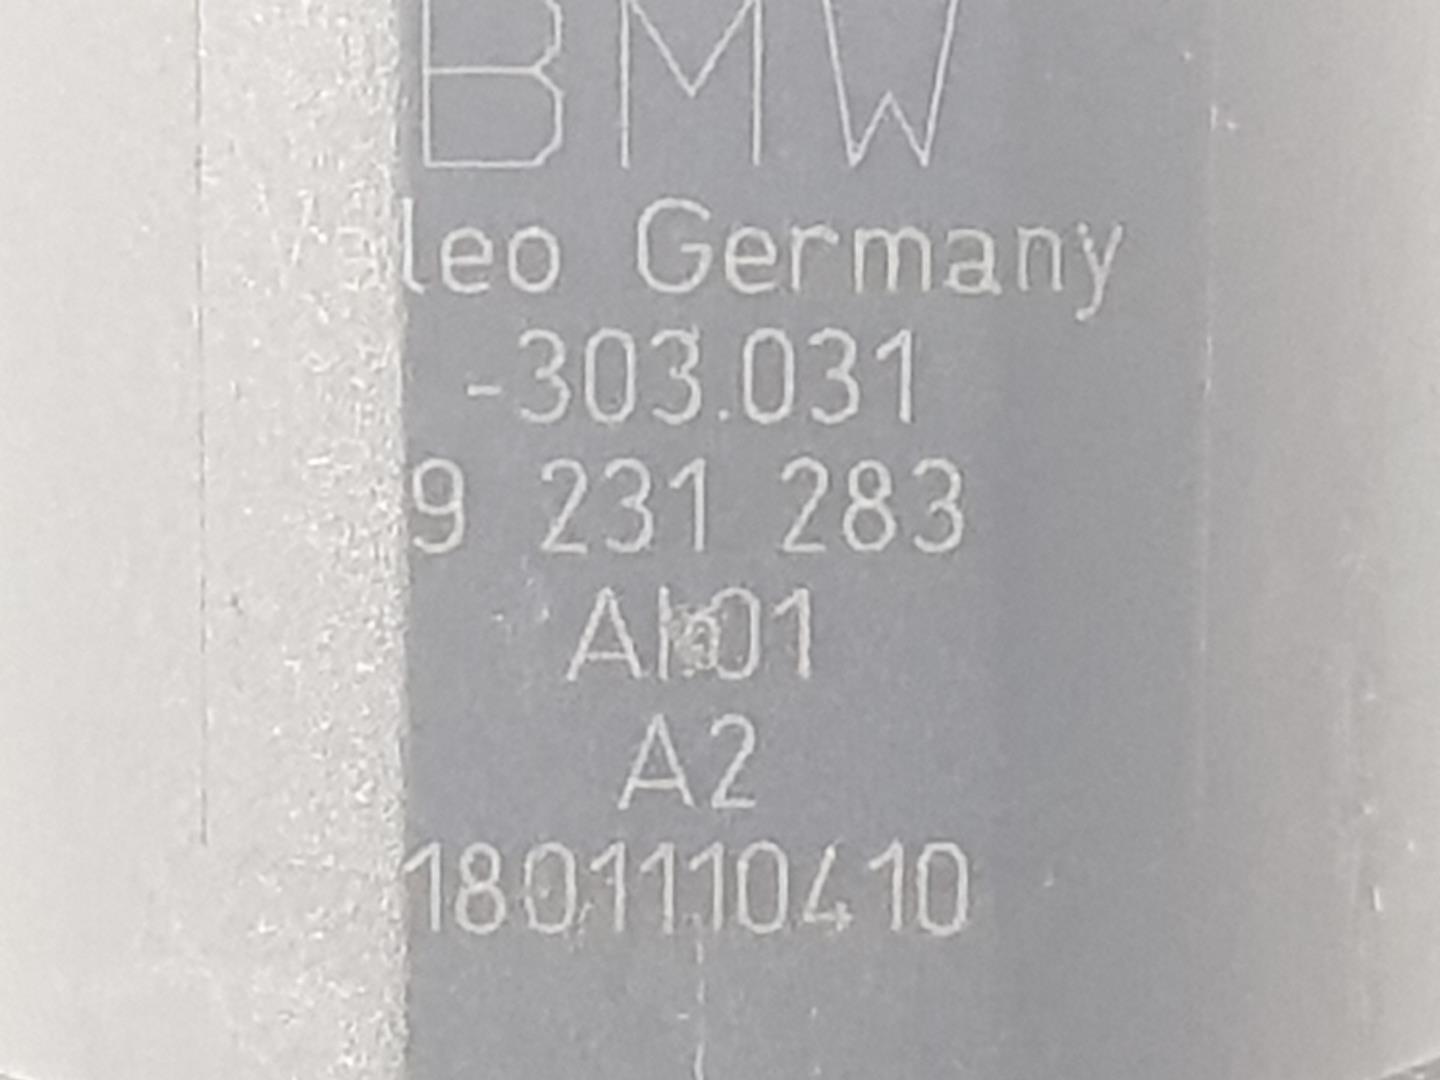 BMW 7 Series F01/F02 (2008-2015) Parking Sensor Rear 66209270050, 9231283, NEGRO668 24857194